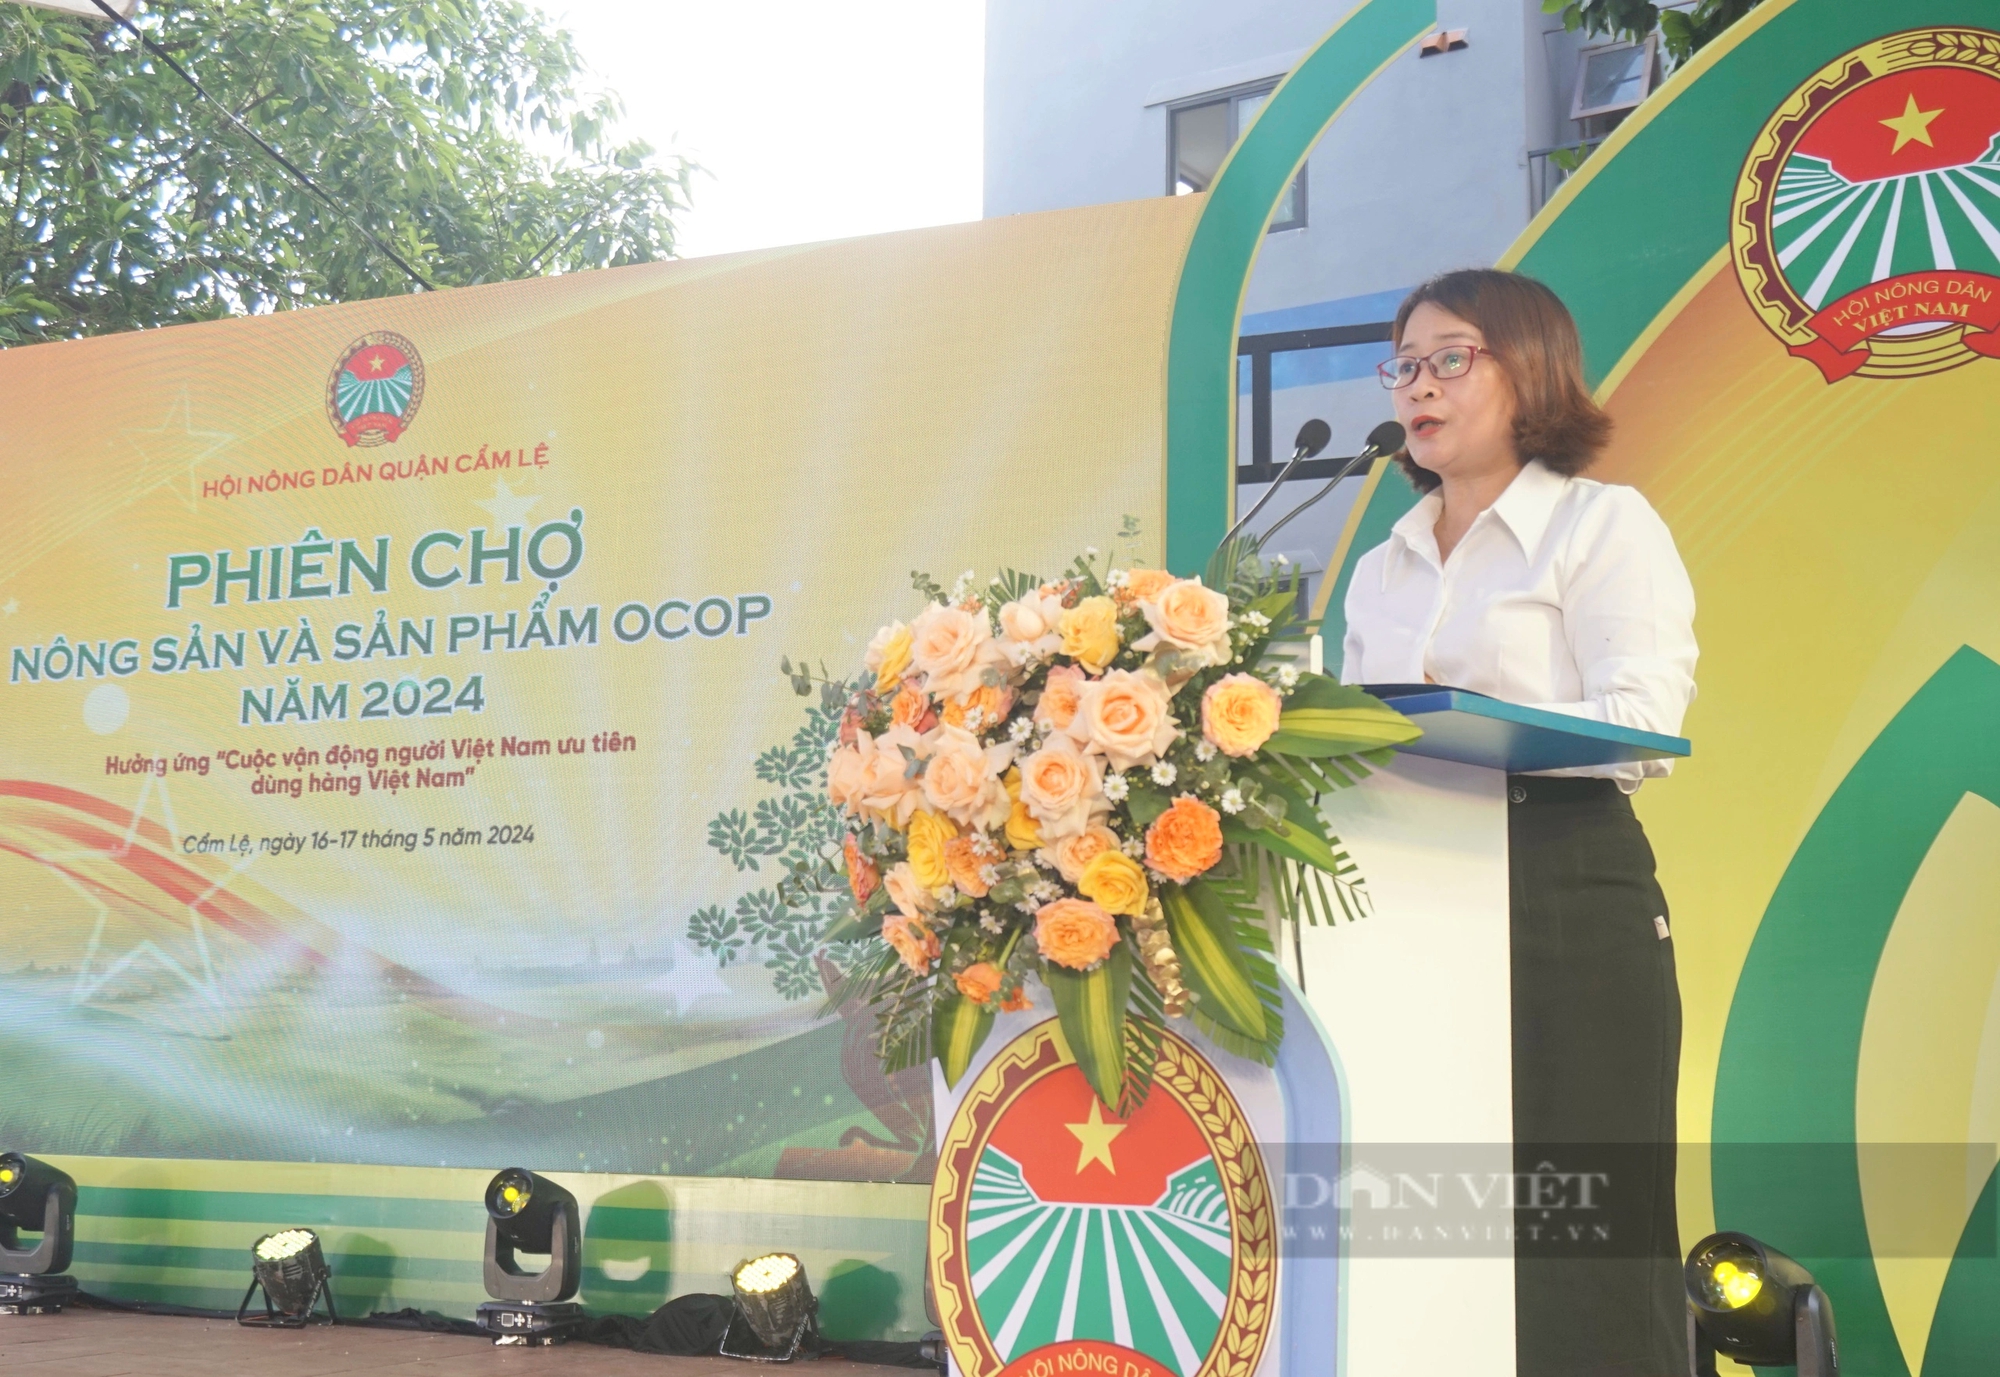 Đà Nẵng: Hàng trăm sản phẩm OCOP hội tụ tại Phiên chợ nông sản quận Cẩm Lệ năm 2024- Ảnh 1.